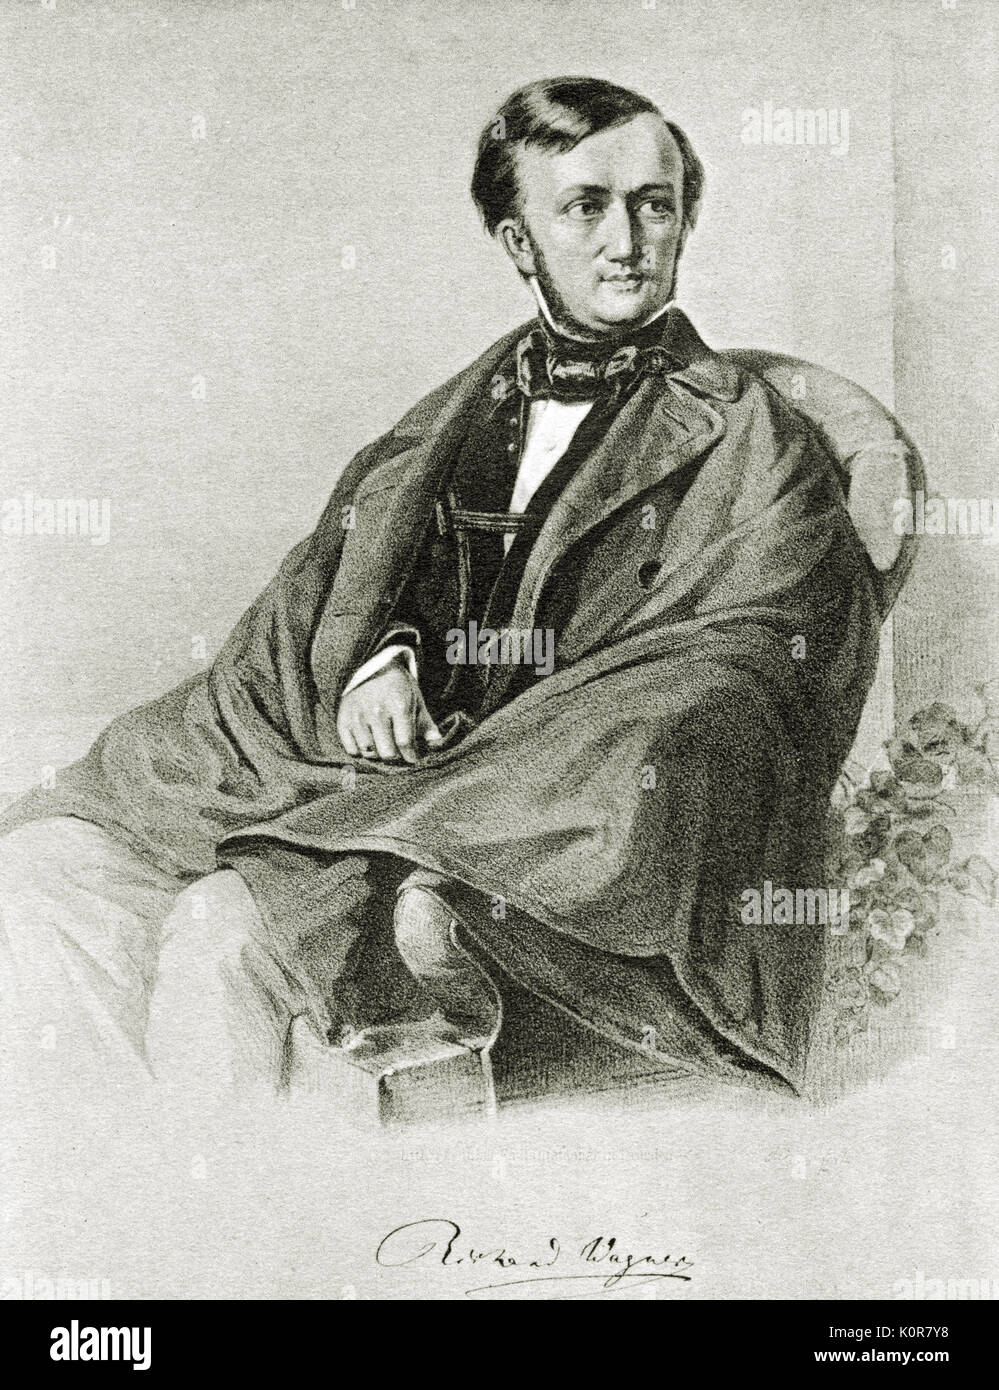 Richard Wagner, ritratto, 1853. Litografia. Compositore tedesco & autore, 22 maggio 1813 - 13 febbraio 1883. Foto Stock